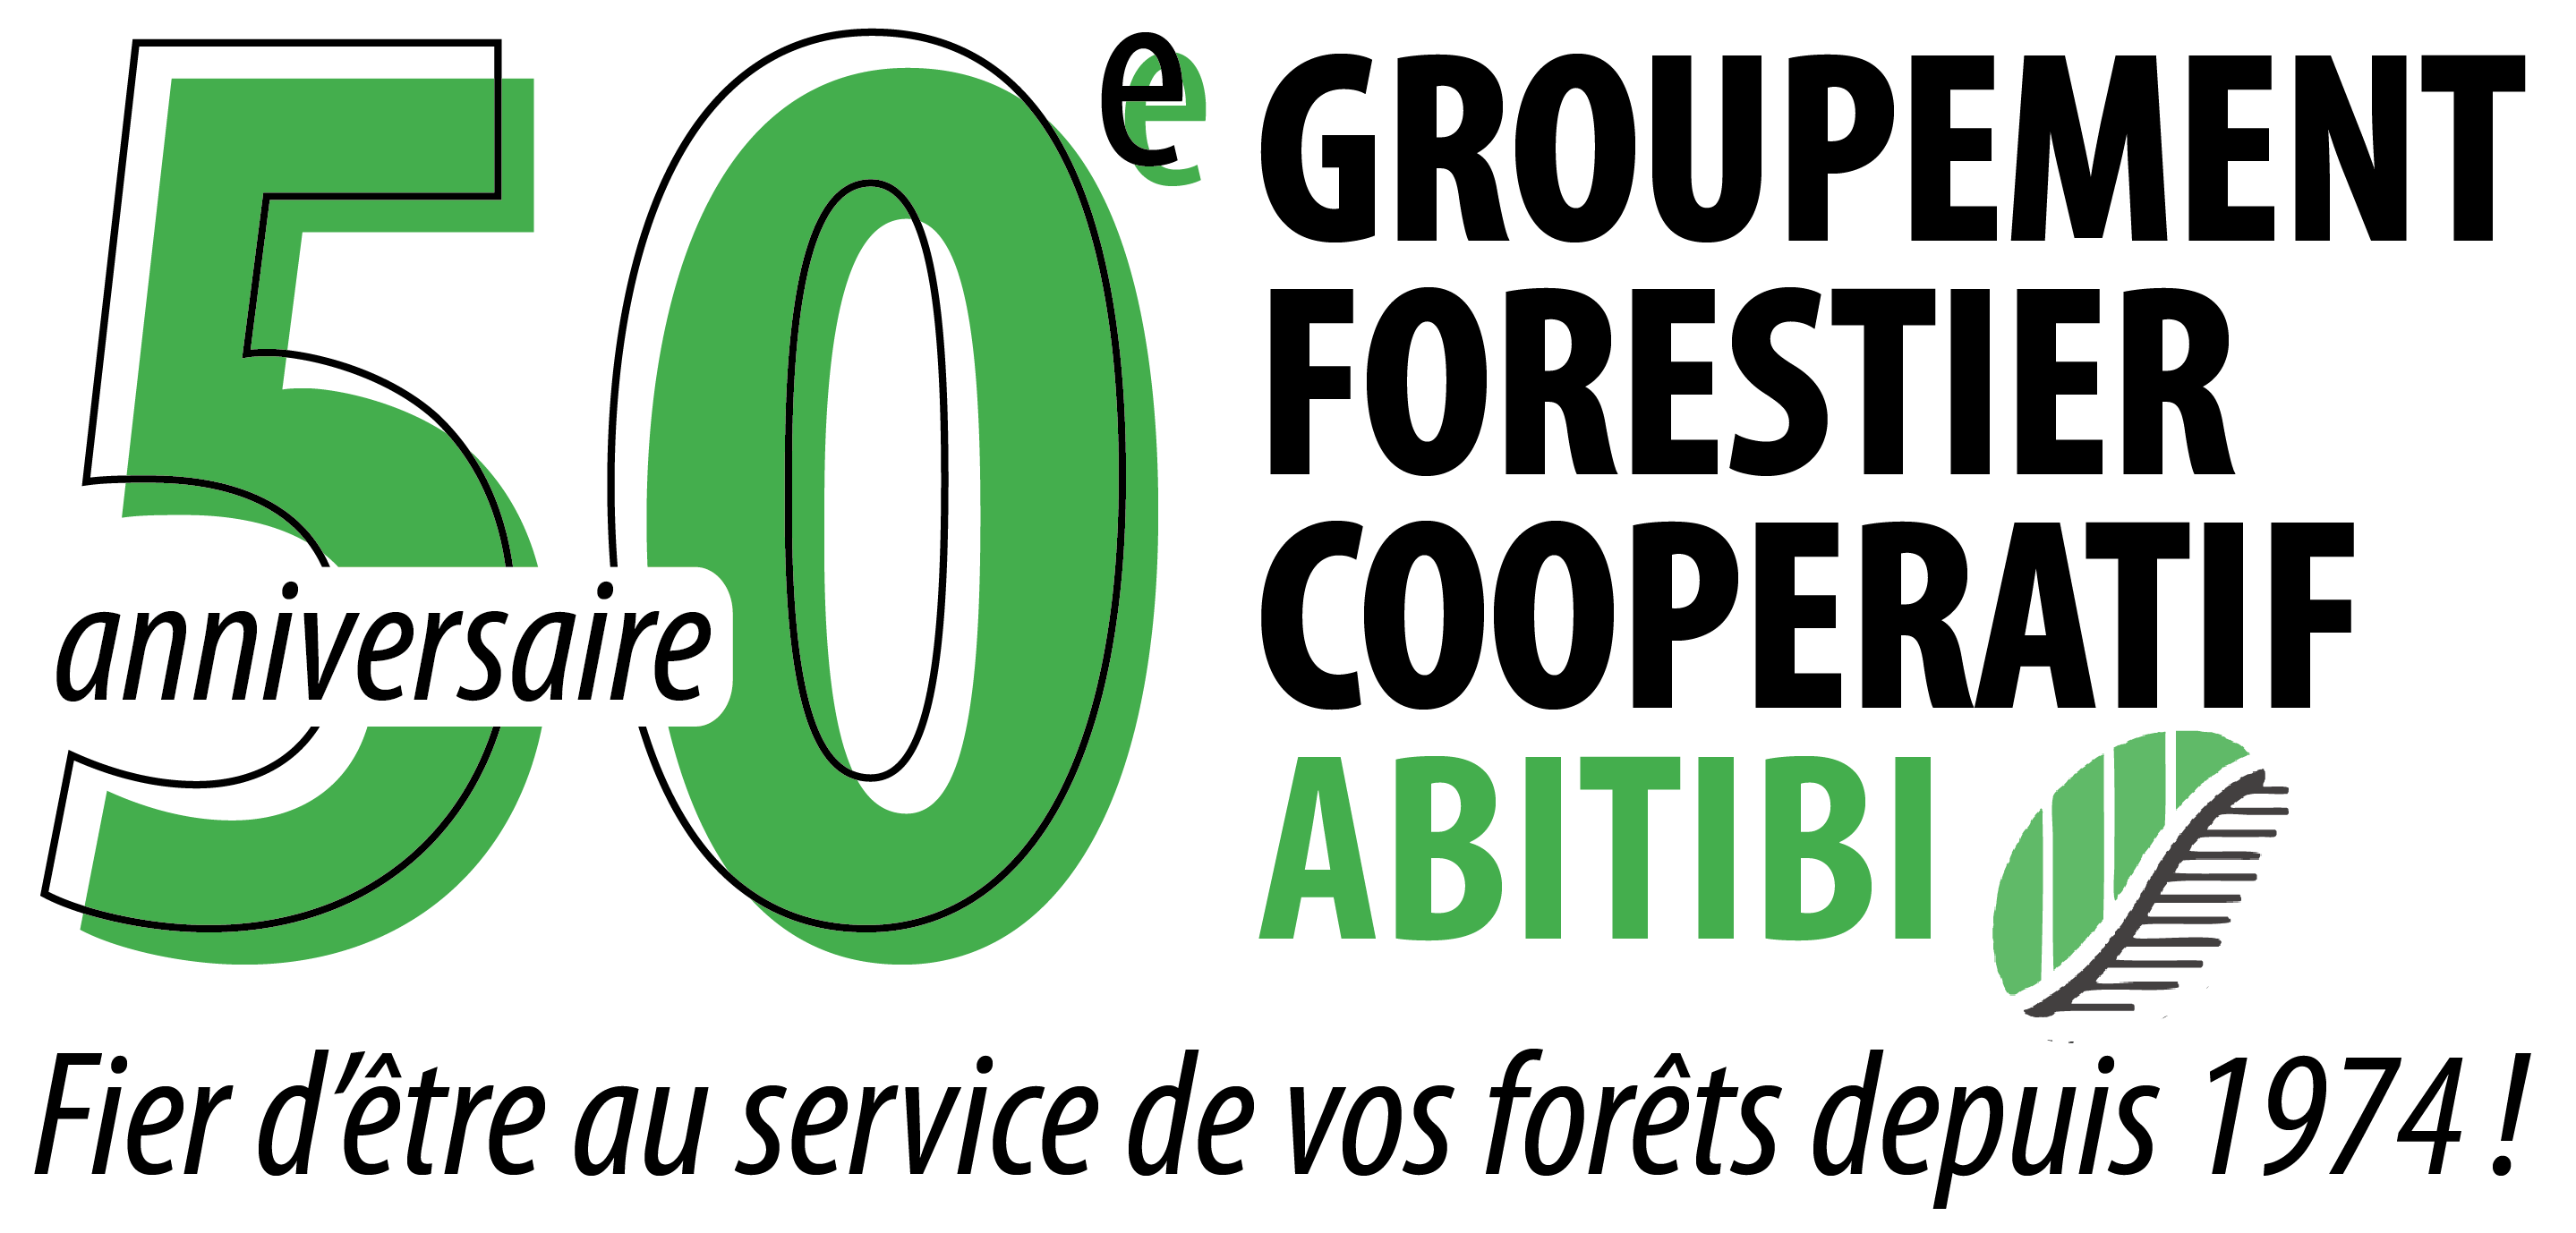 Groupement forestier coopératif Abitibi